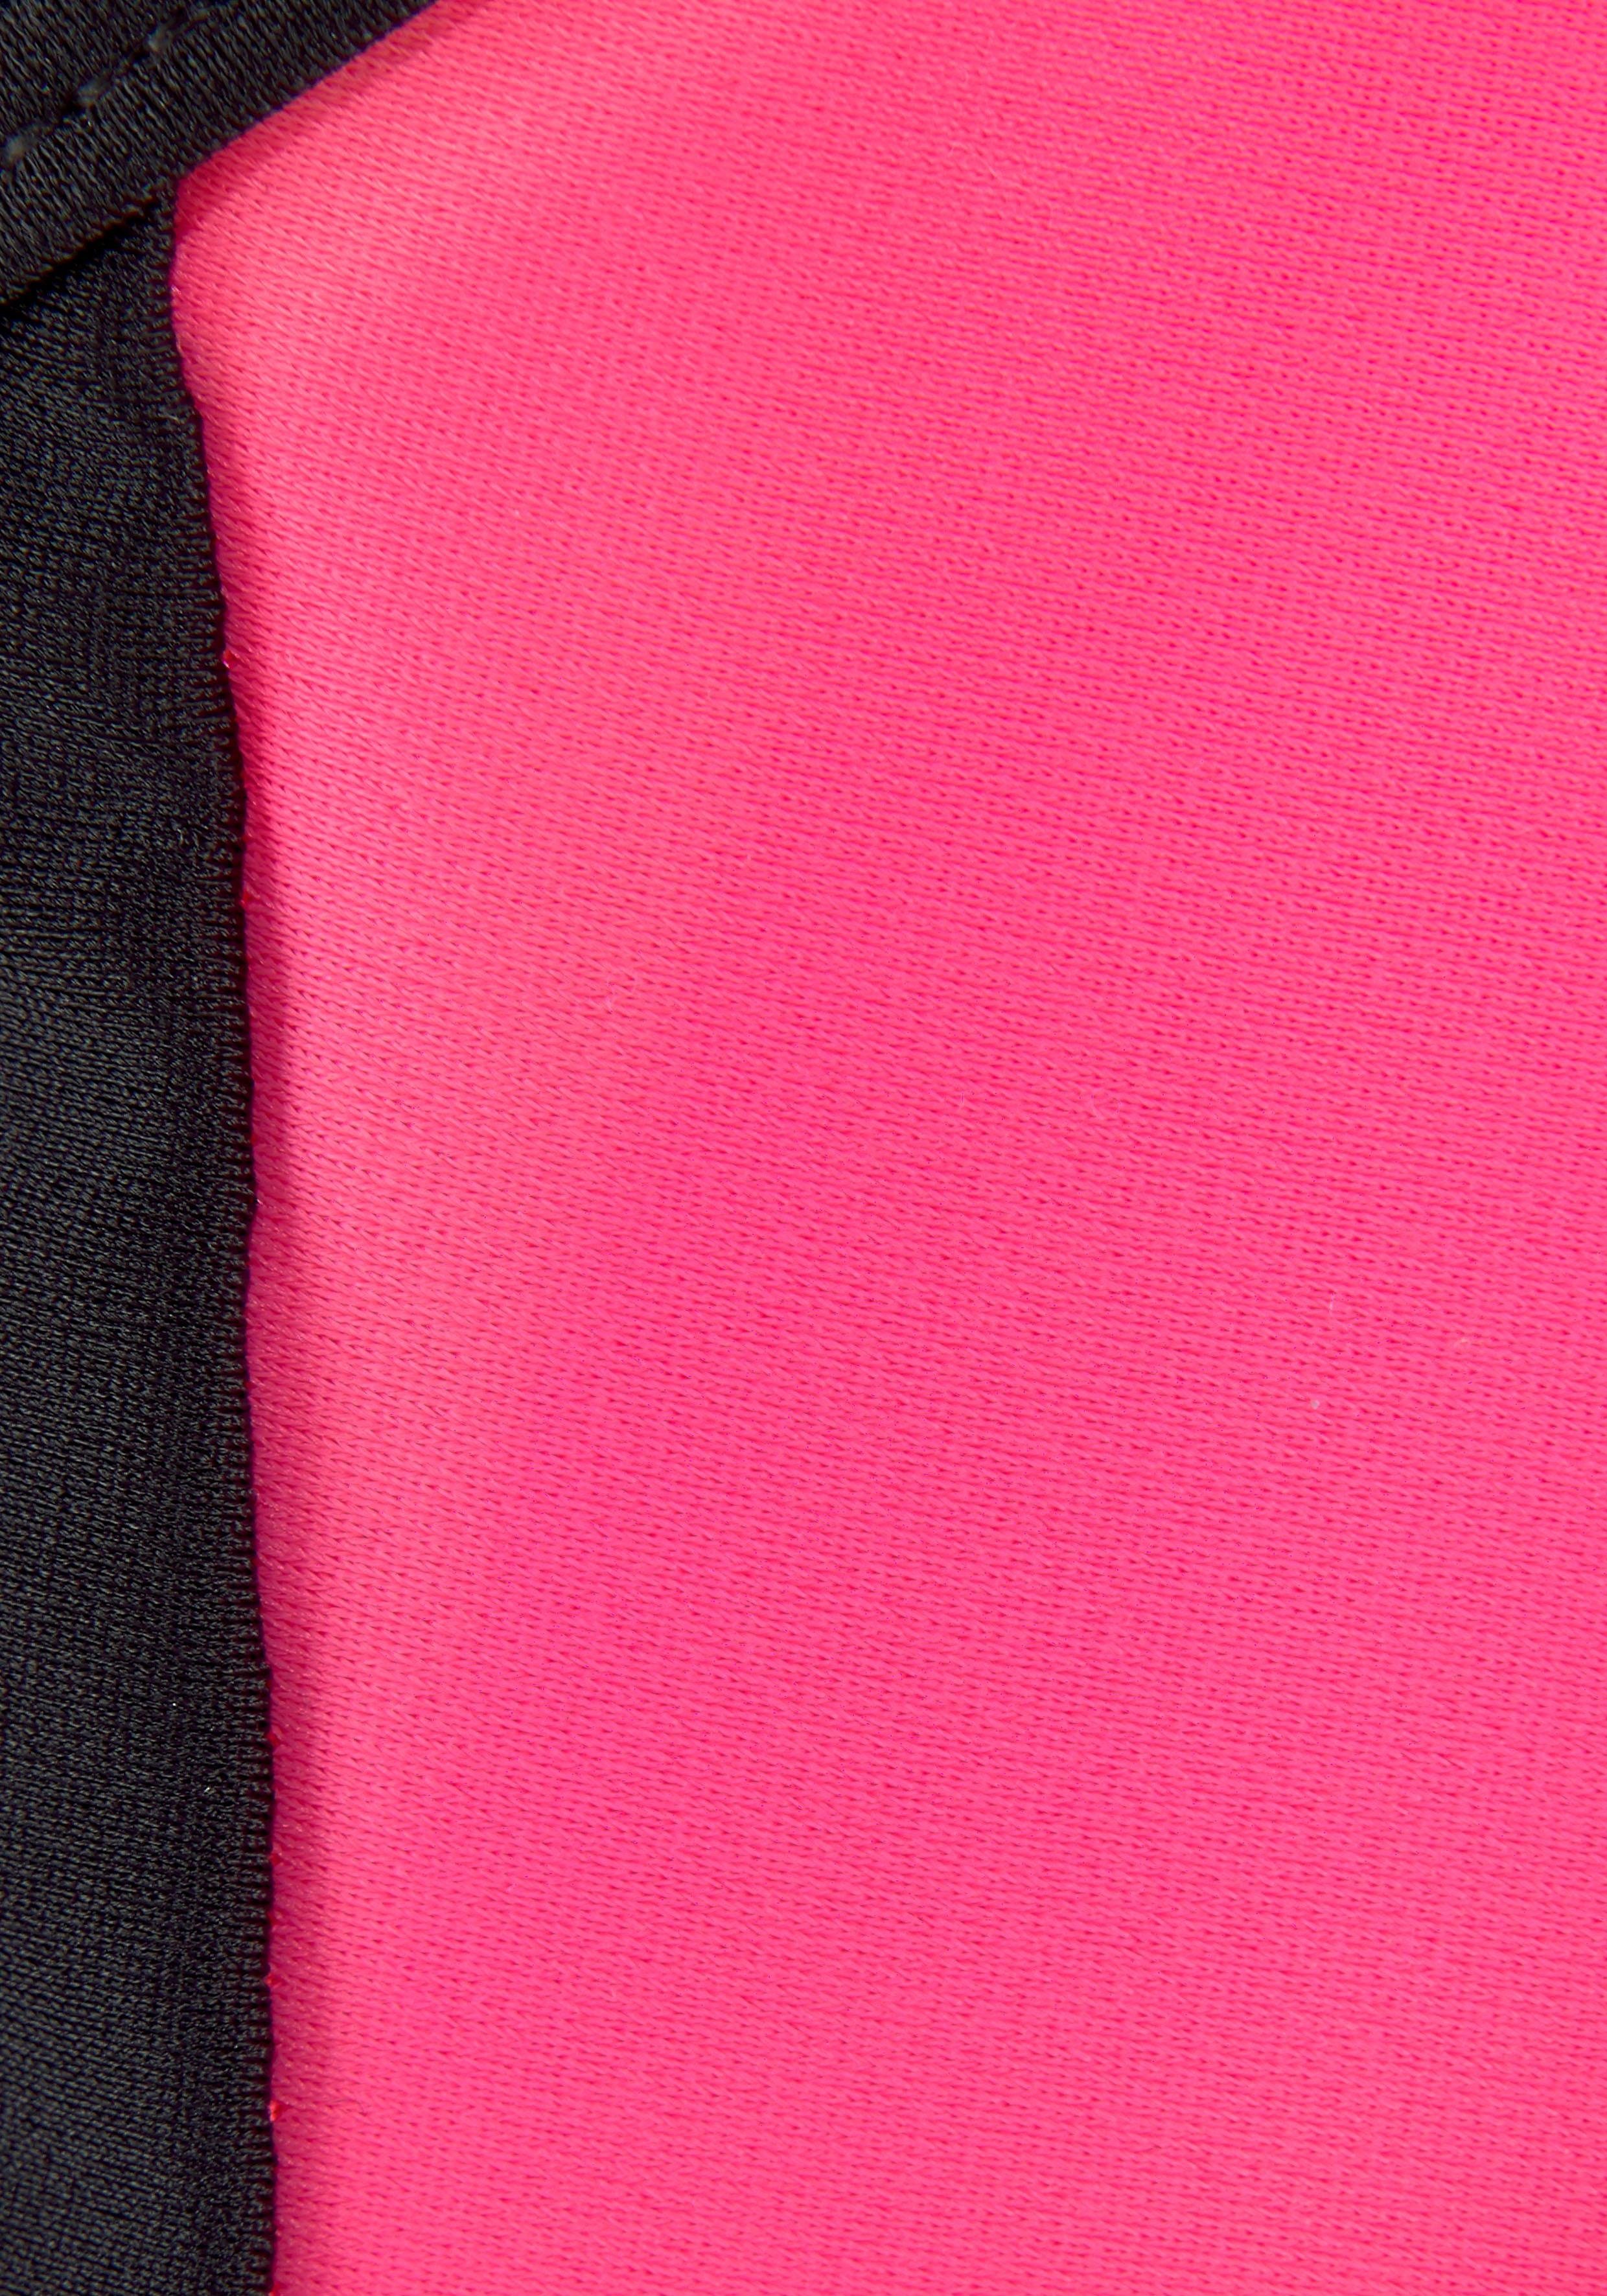 Bustier-Bikini gekreuzten Trägern Bench. mit pink-schwarz